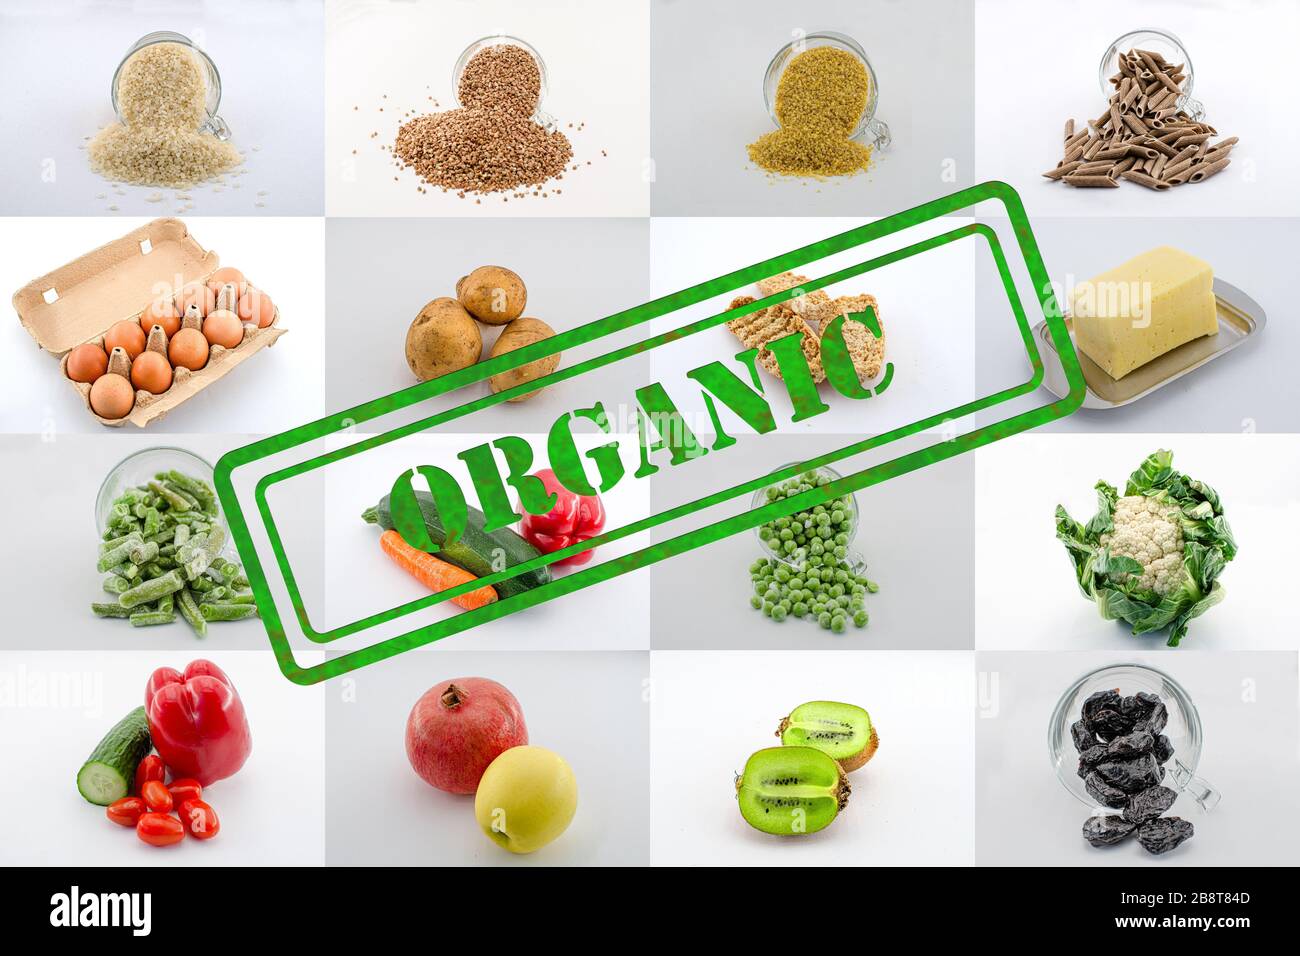 Mosaico o collage de diversas plazas de alimentos con signo orgánico. Collage de alimentos - grañadas, frutas, verduras, queso, verduras congeladas, huevos Foto de stock